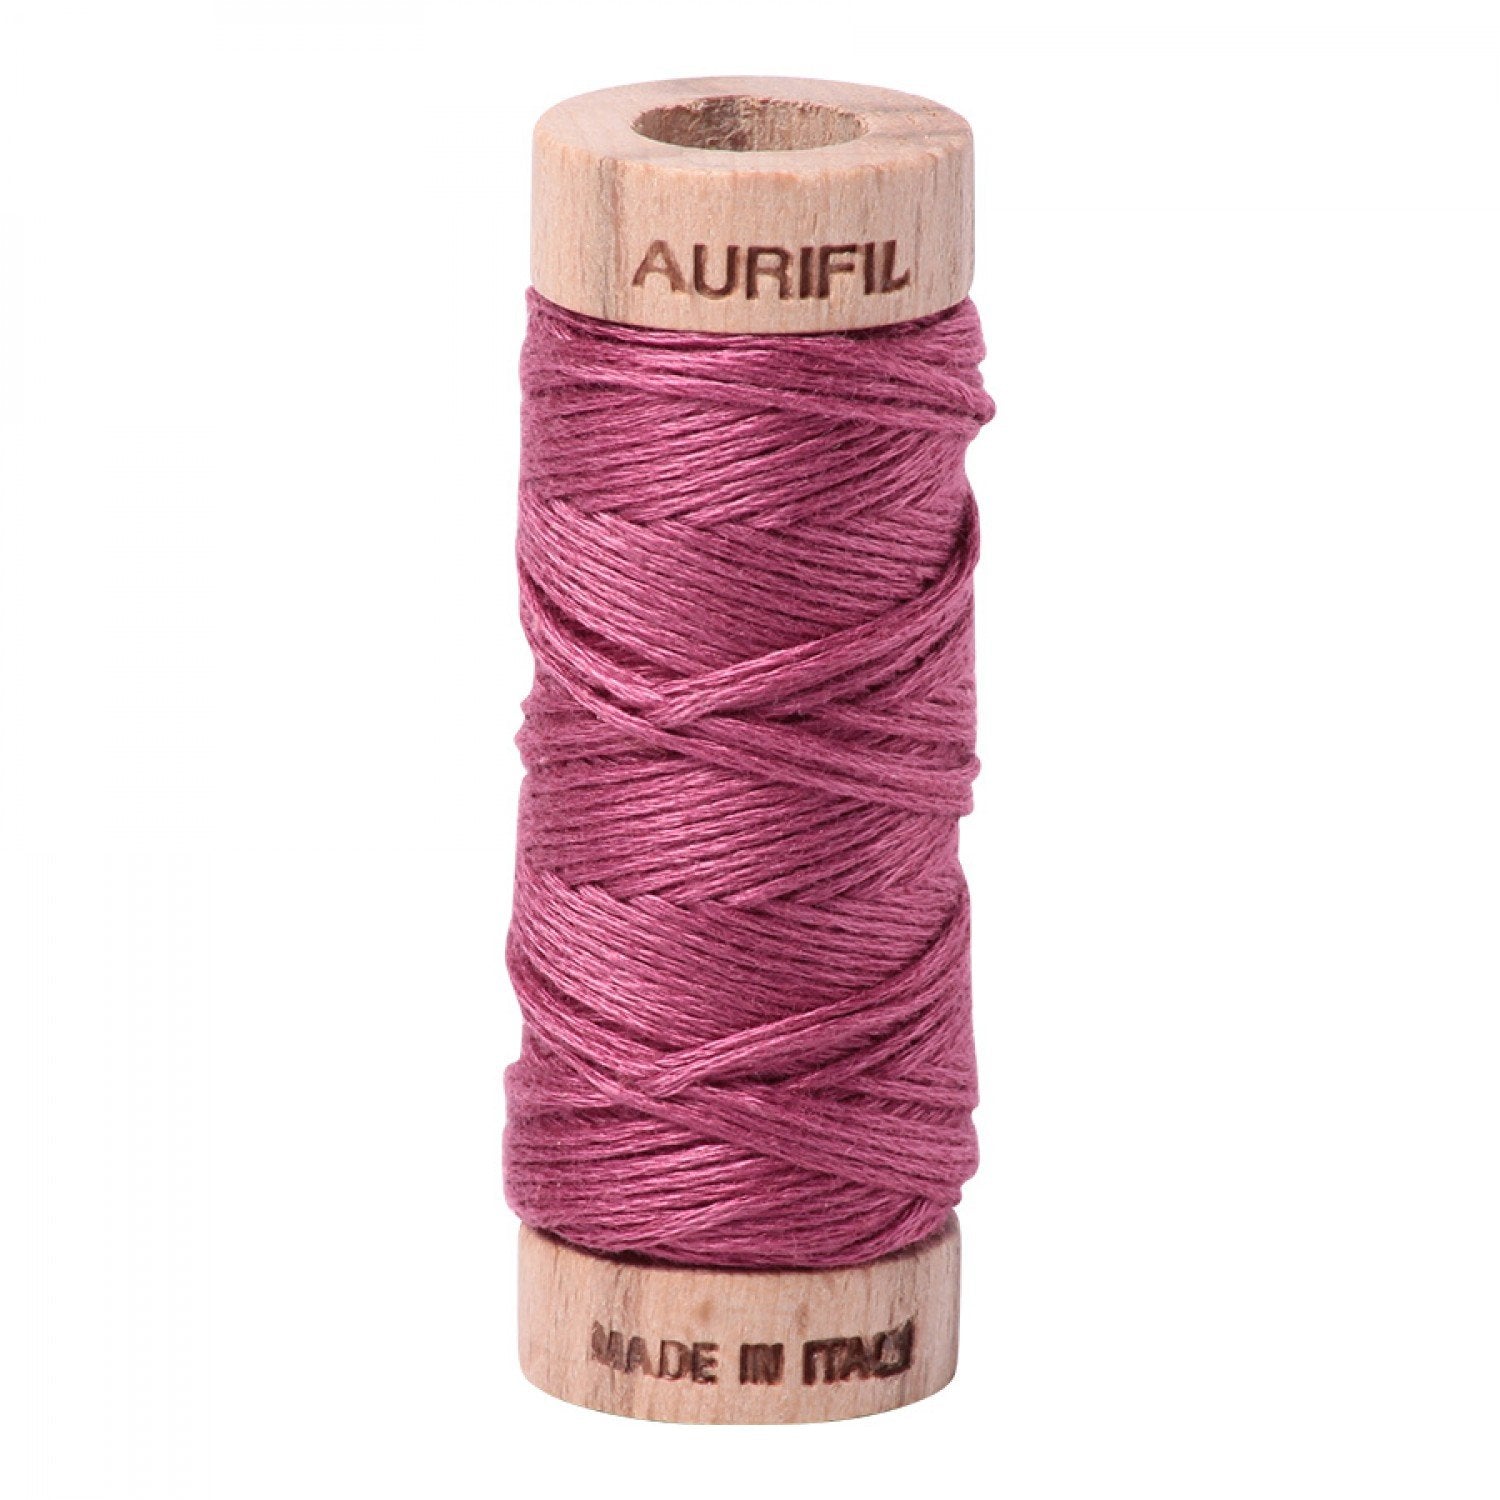 Aurifloss 6-strand Floss, Rose, 2450